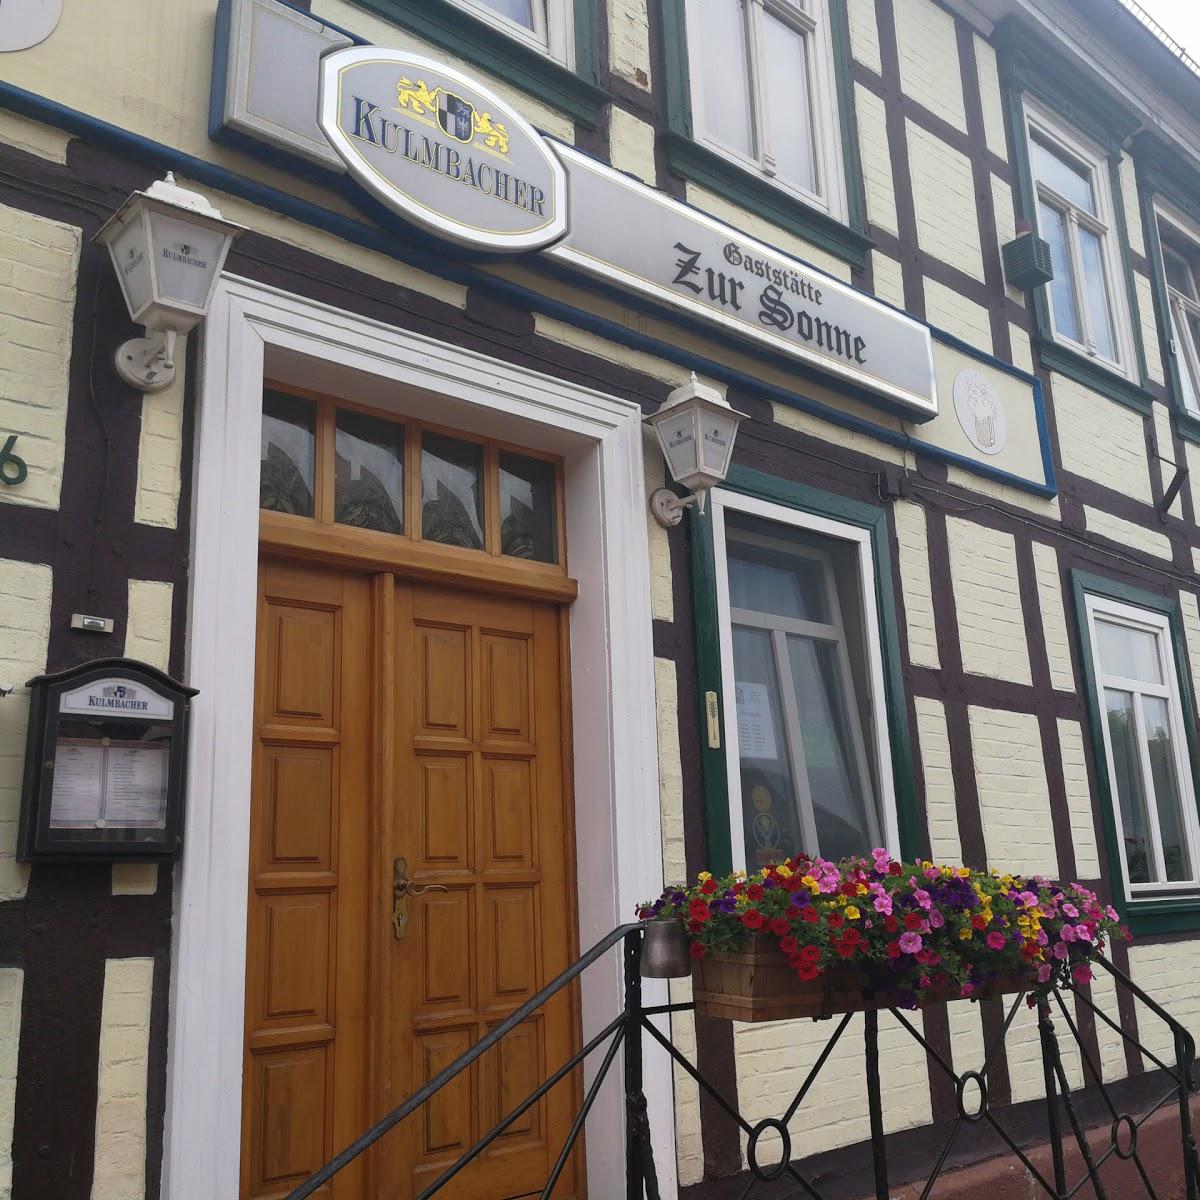 Restaurant "Jevergasse" in  Oebisfelde